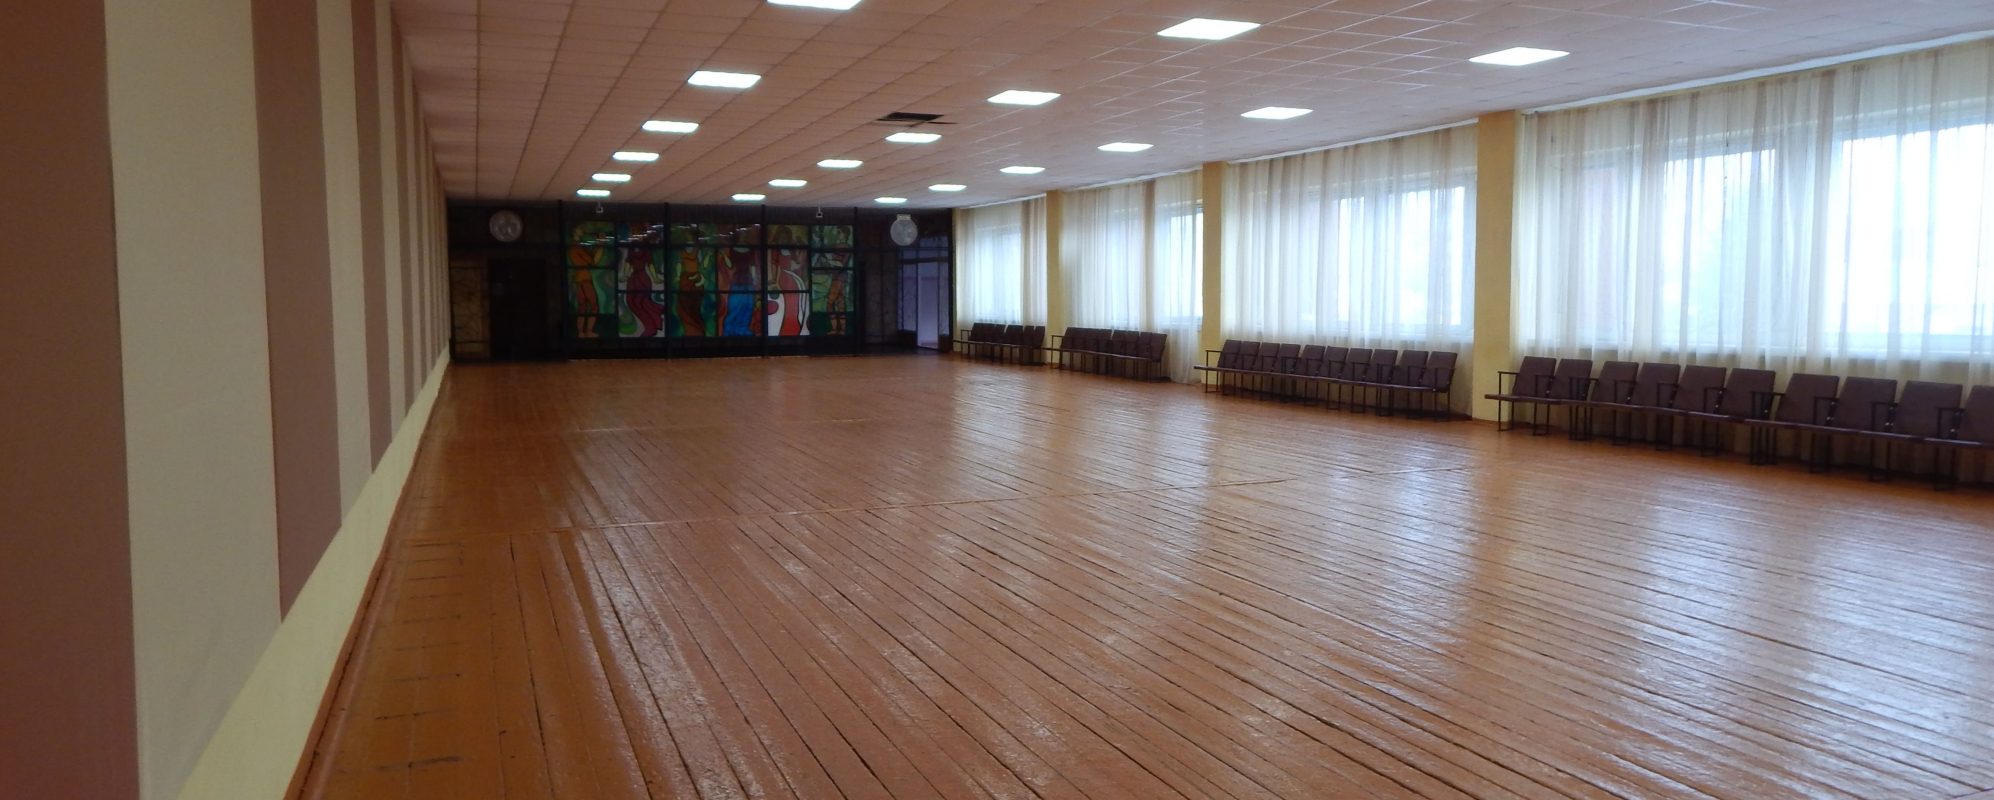 Фотографии концертного зала Дискотечный зал Торопецкого РДК